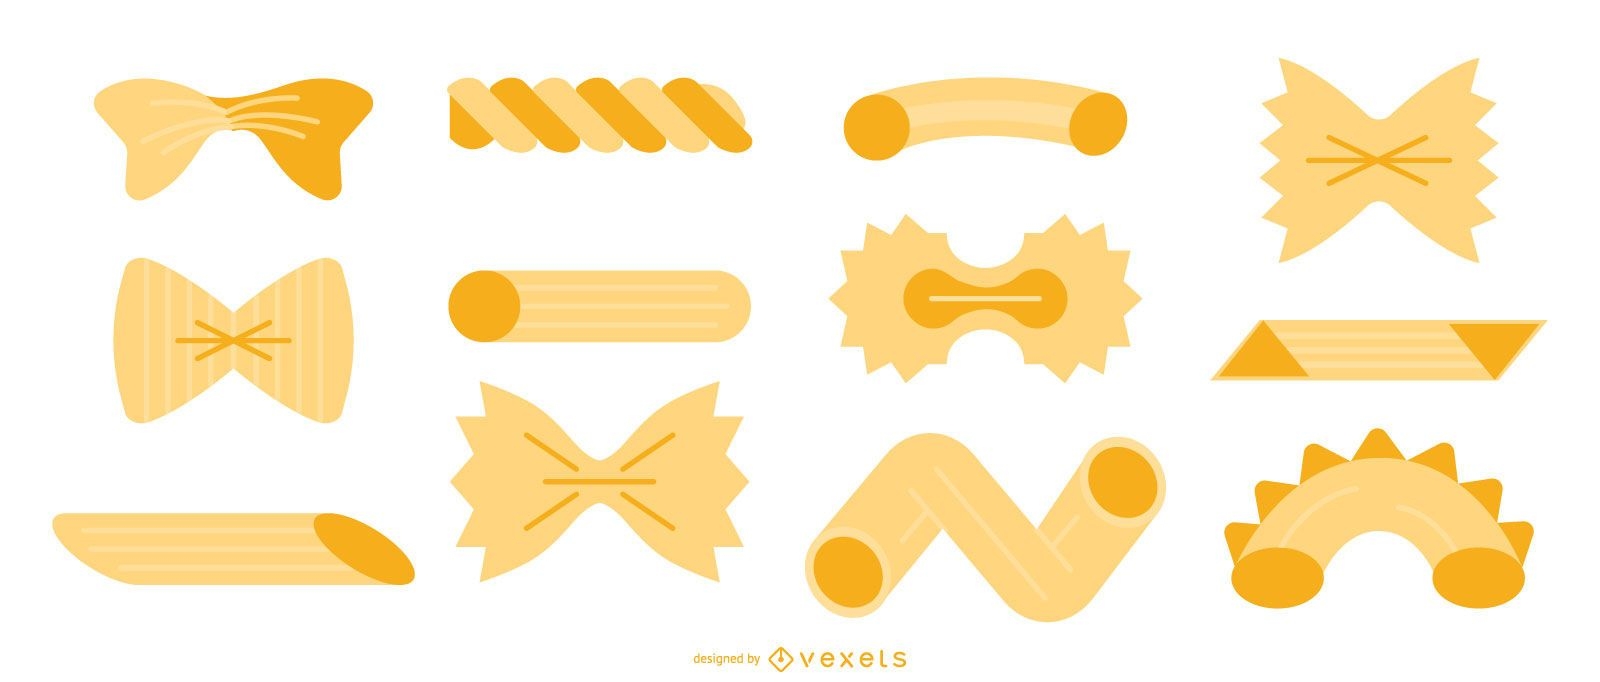 Pasta flat vector set